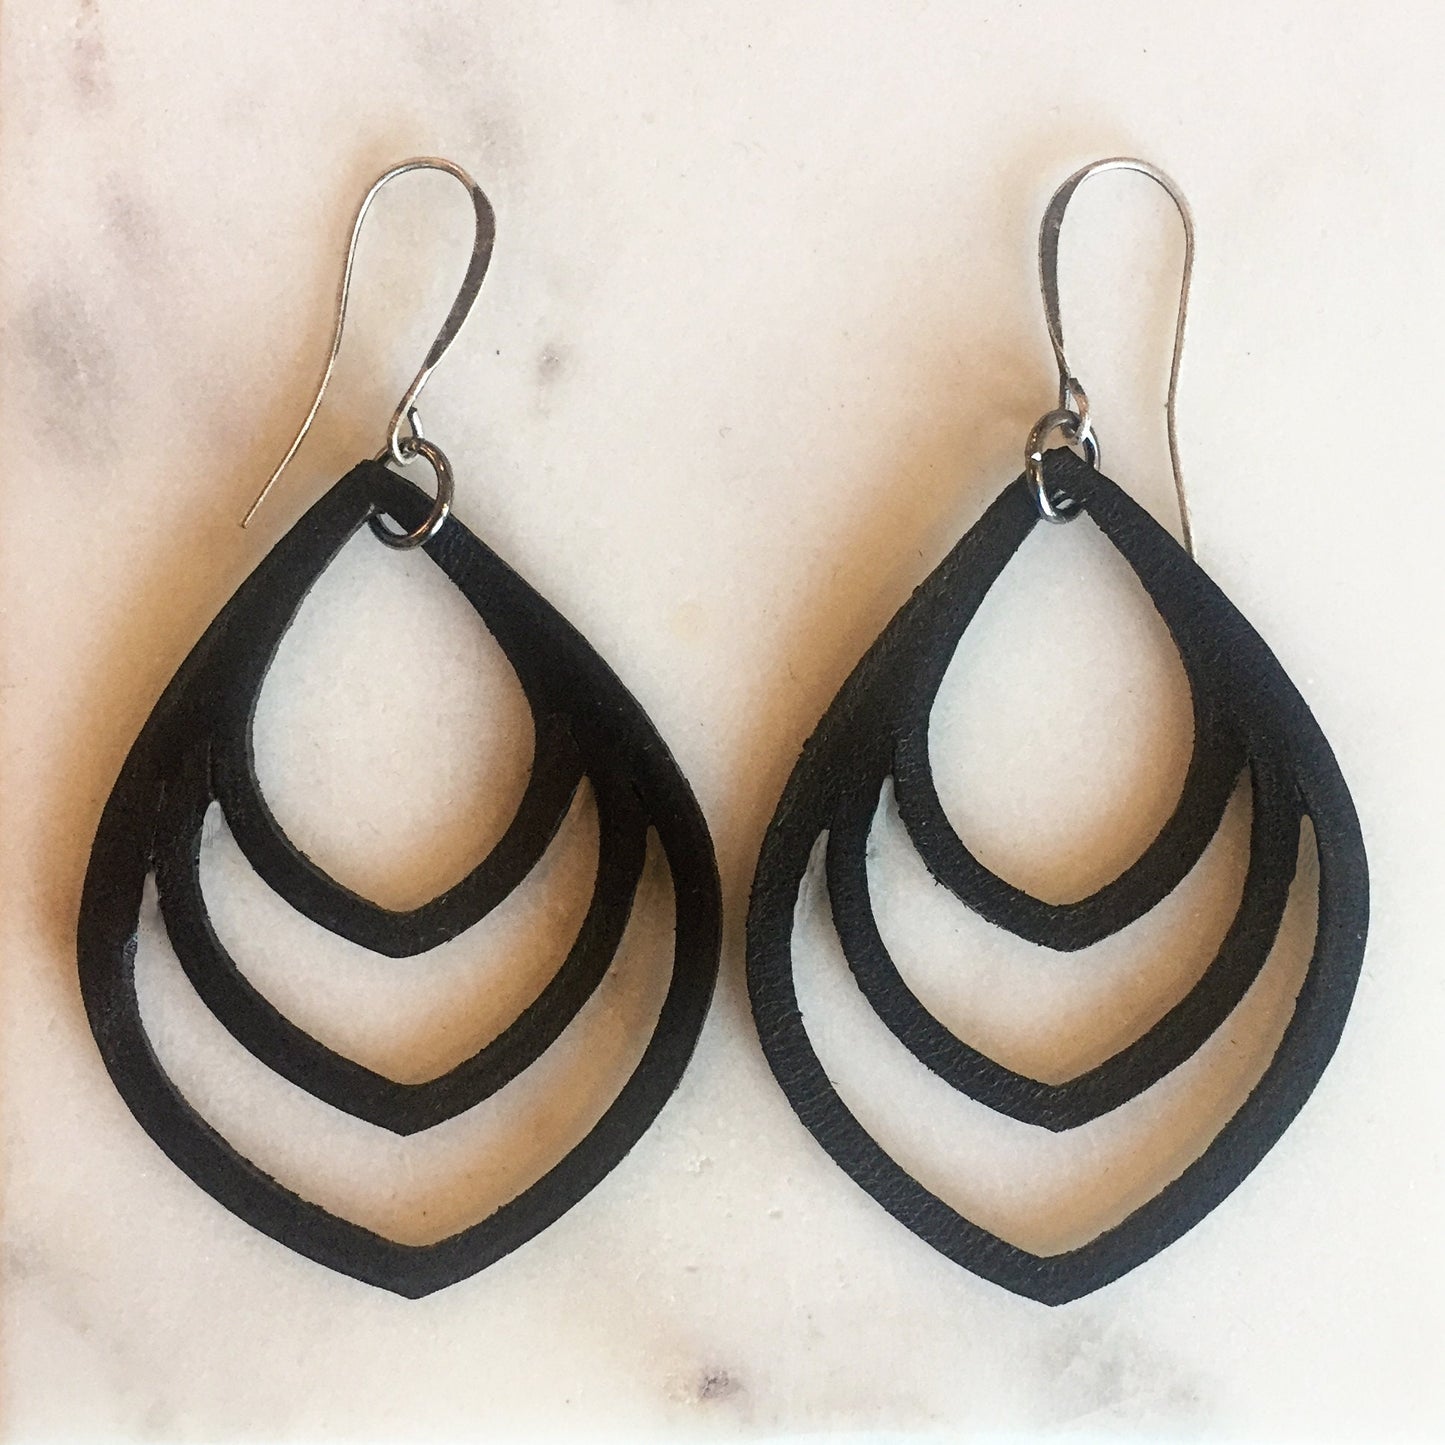 Leather Earrings |  Minimalist Earrings - Dangle Earrings - Boho Chic Earrings